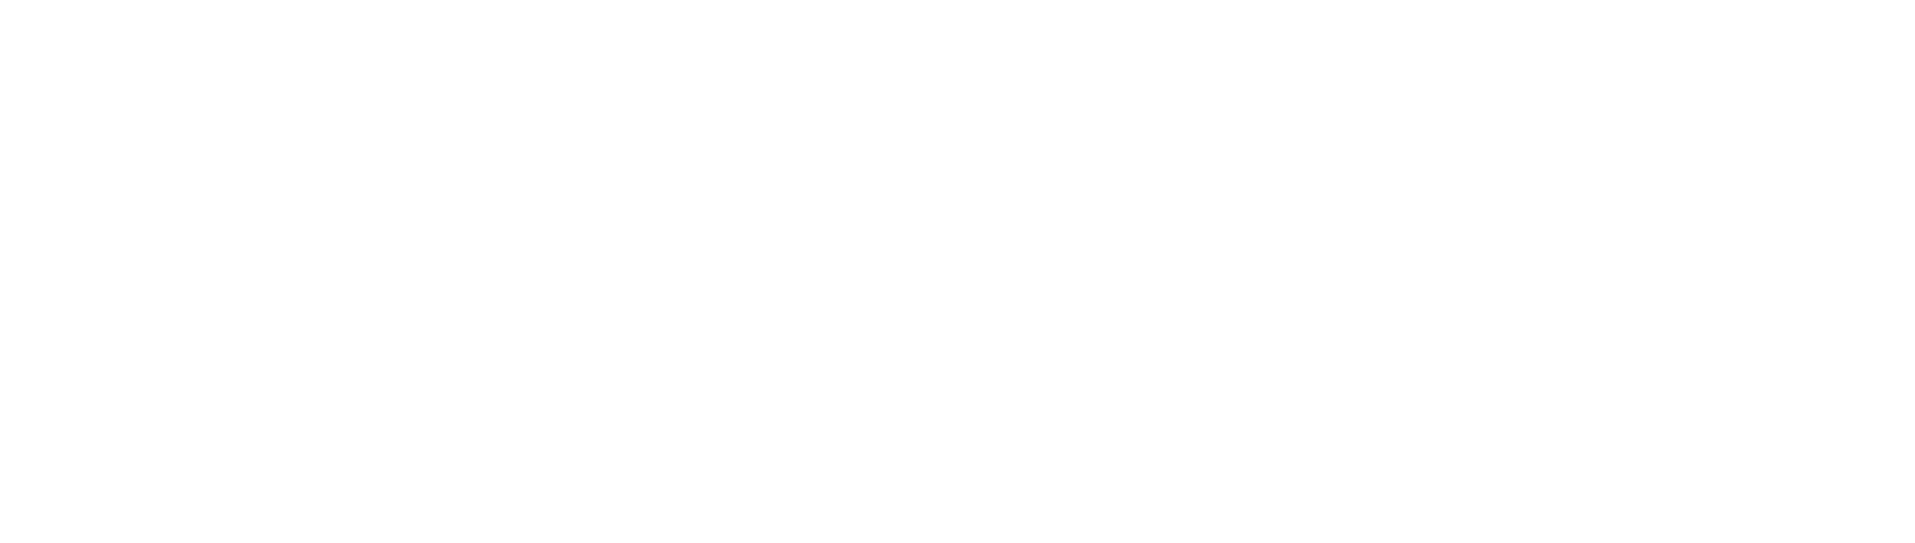 UN Geneva logo